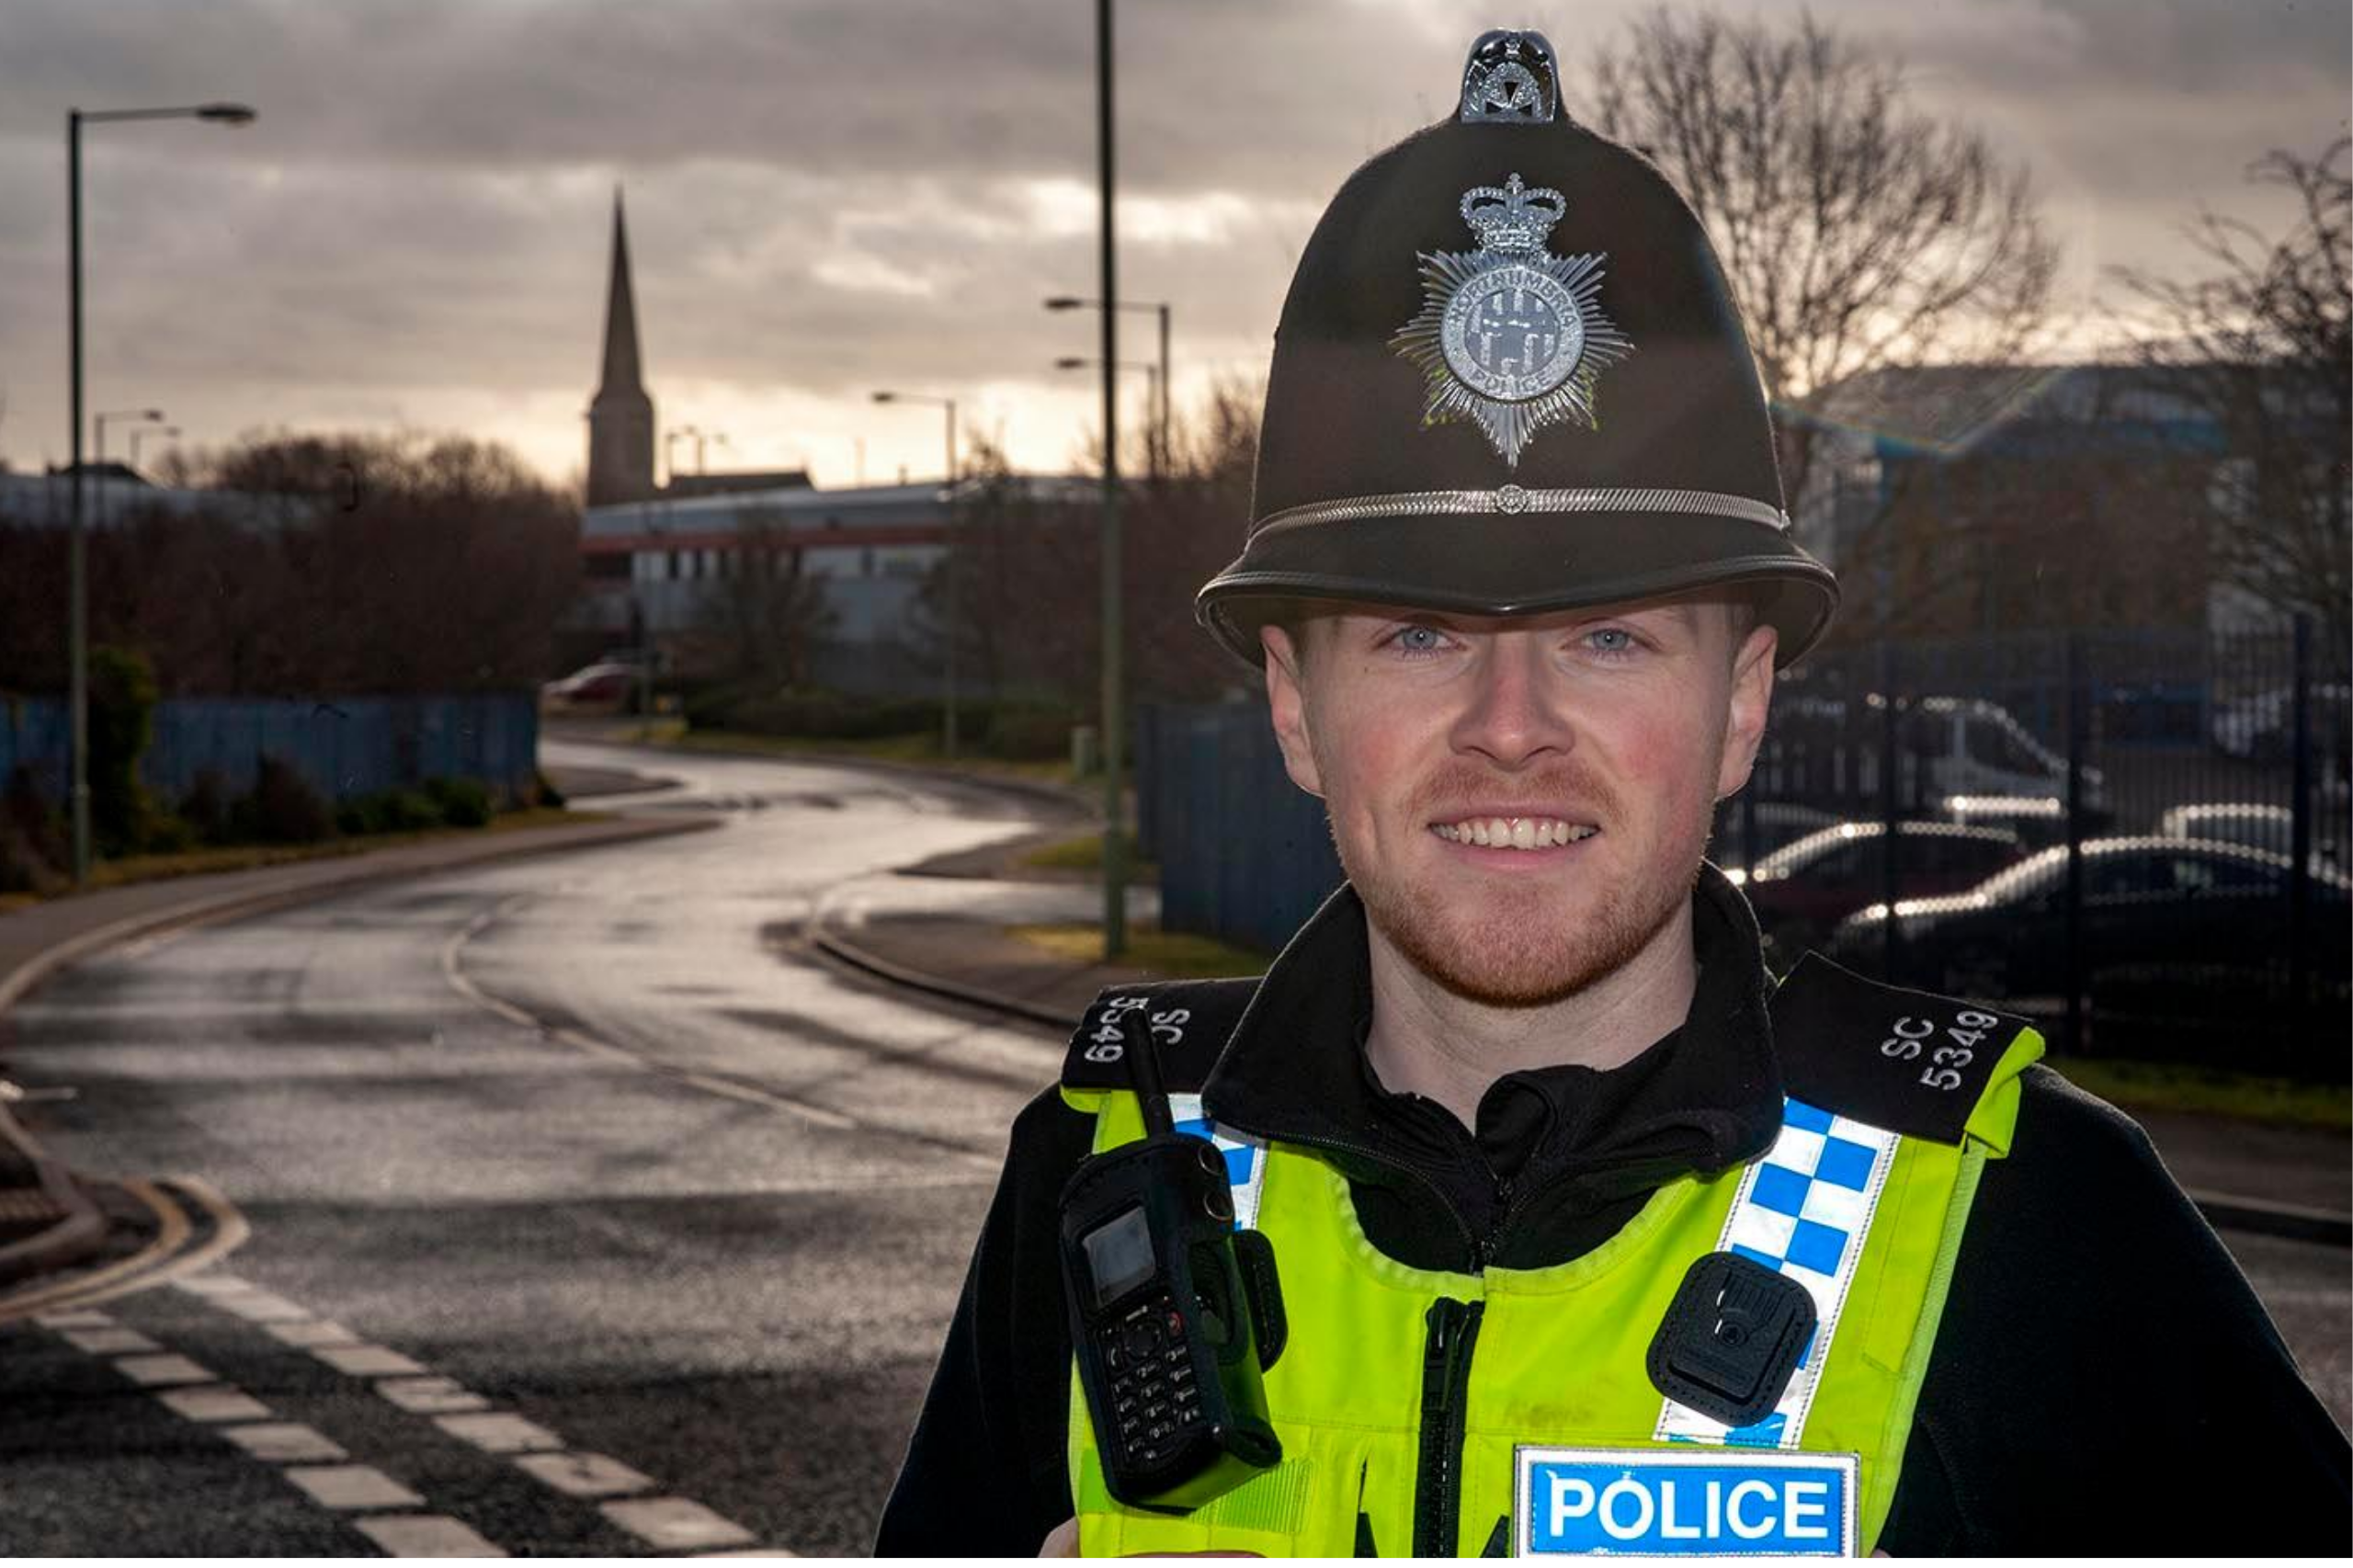 Northumbria police volunteer - special constable wearing uniform on patrol